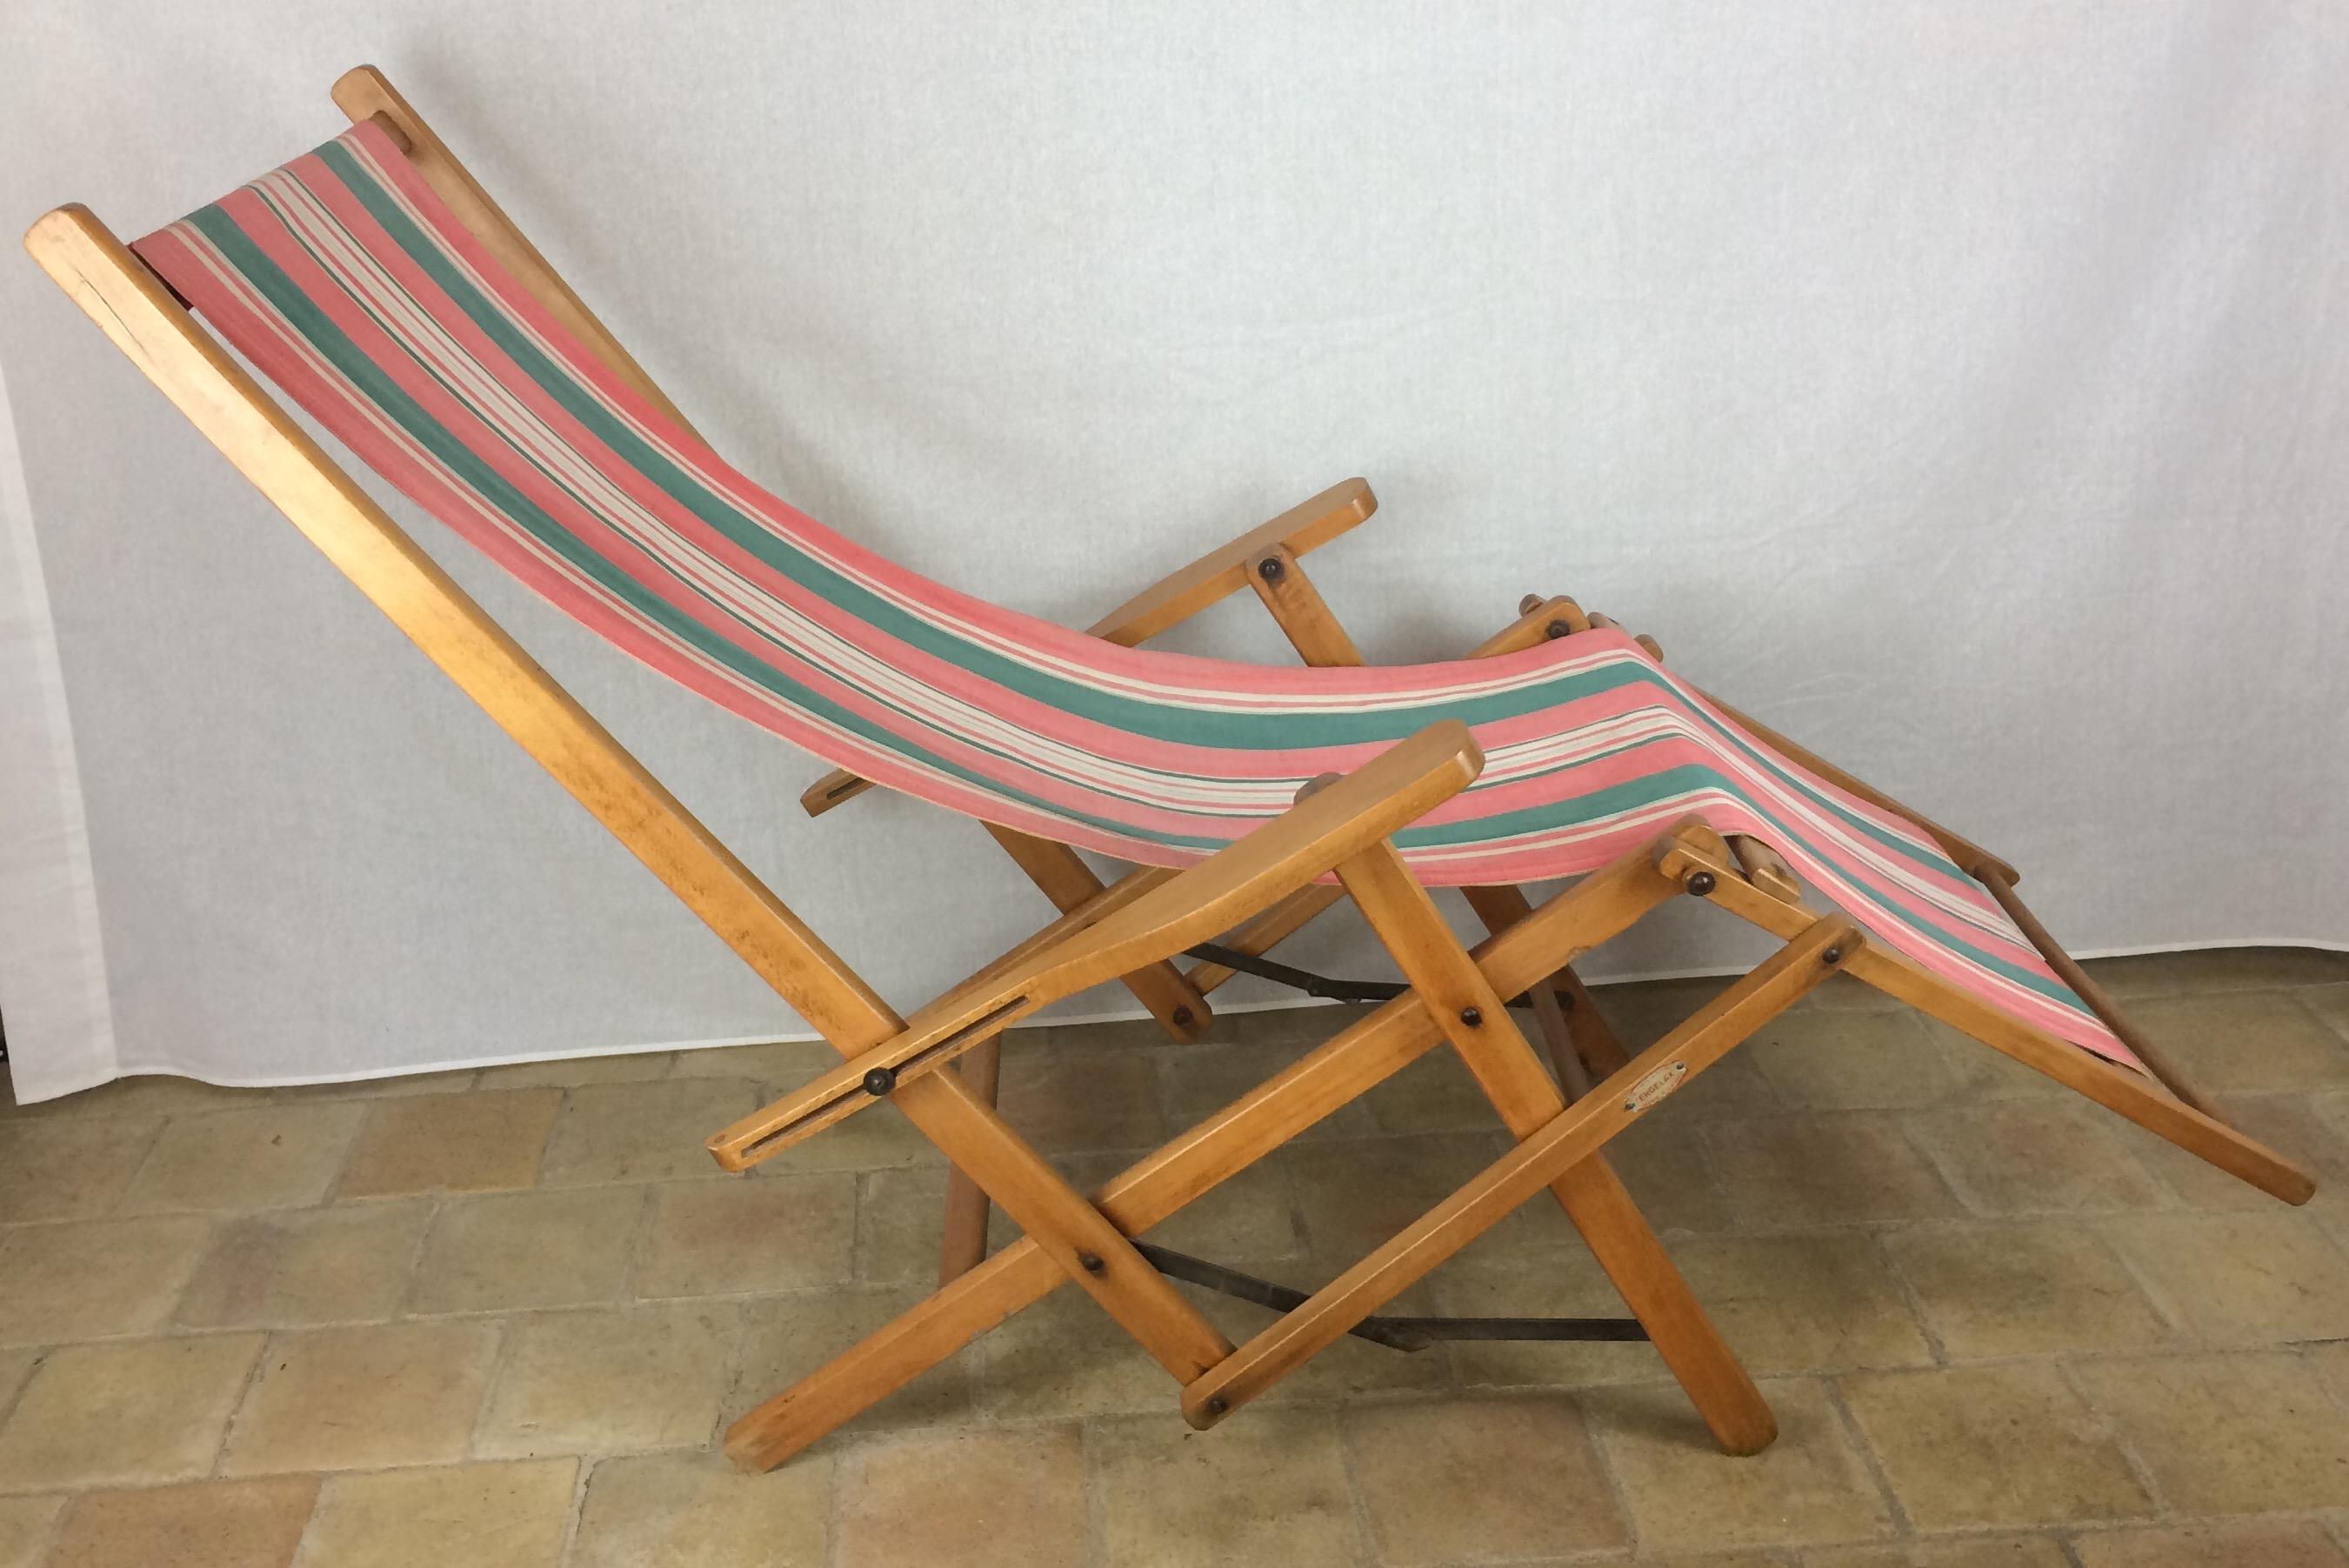 Chaise longue américaine ERGELAX en toile pliante des années 1950, conçue par R. Gleizes pour RG. Un vrai style américain. 

Très unique et rare chaise longue américaine en toile pliante. Toile amovible pour un nettoyage facile. Assez robuste pour